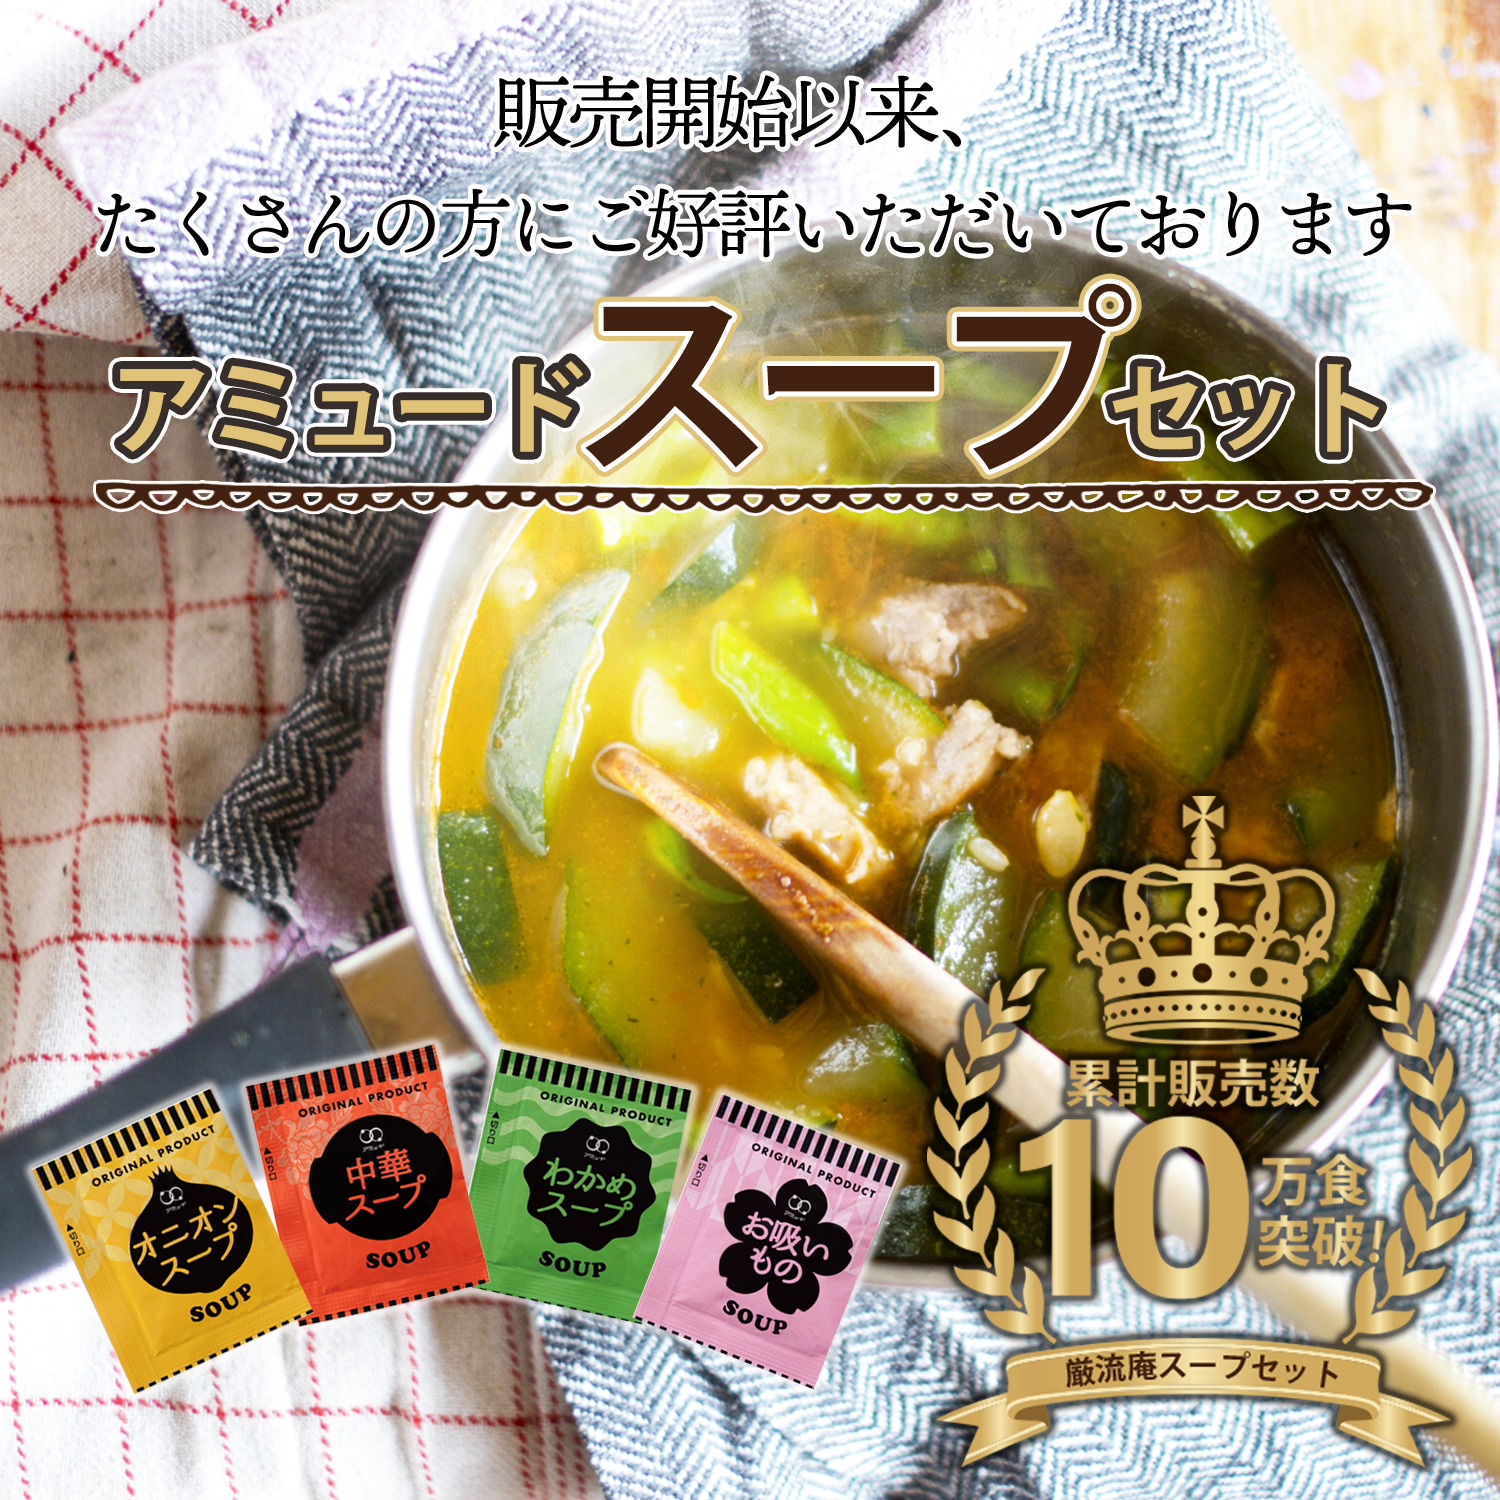 3、中華スープ・わかめスープ☆50袋 - 3